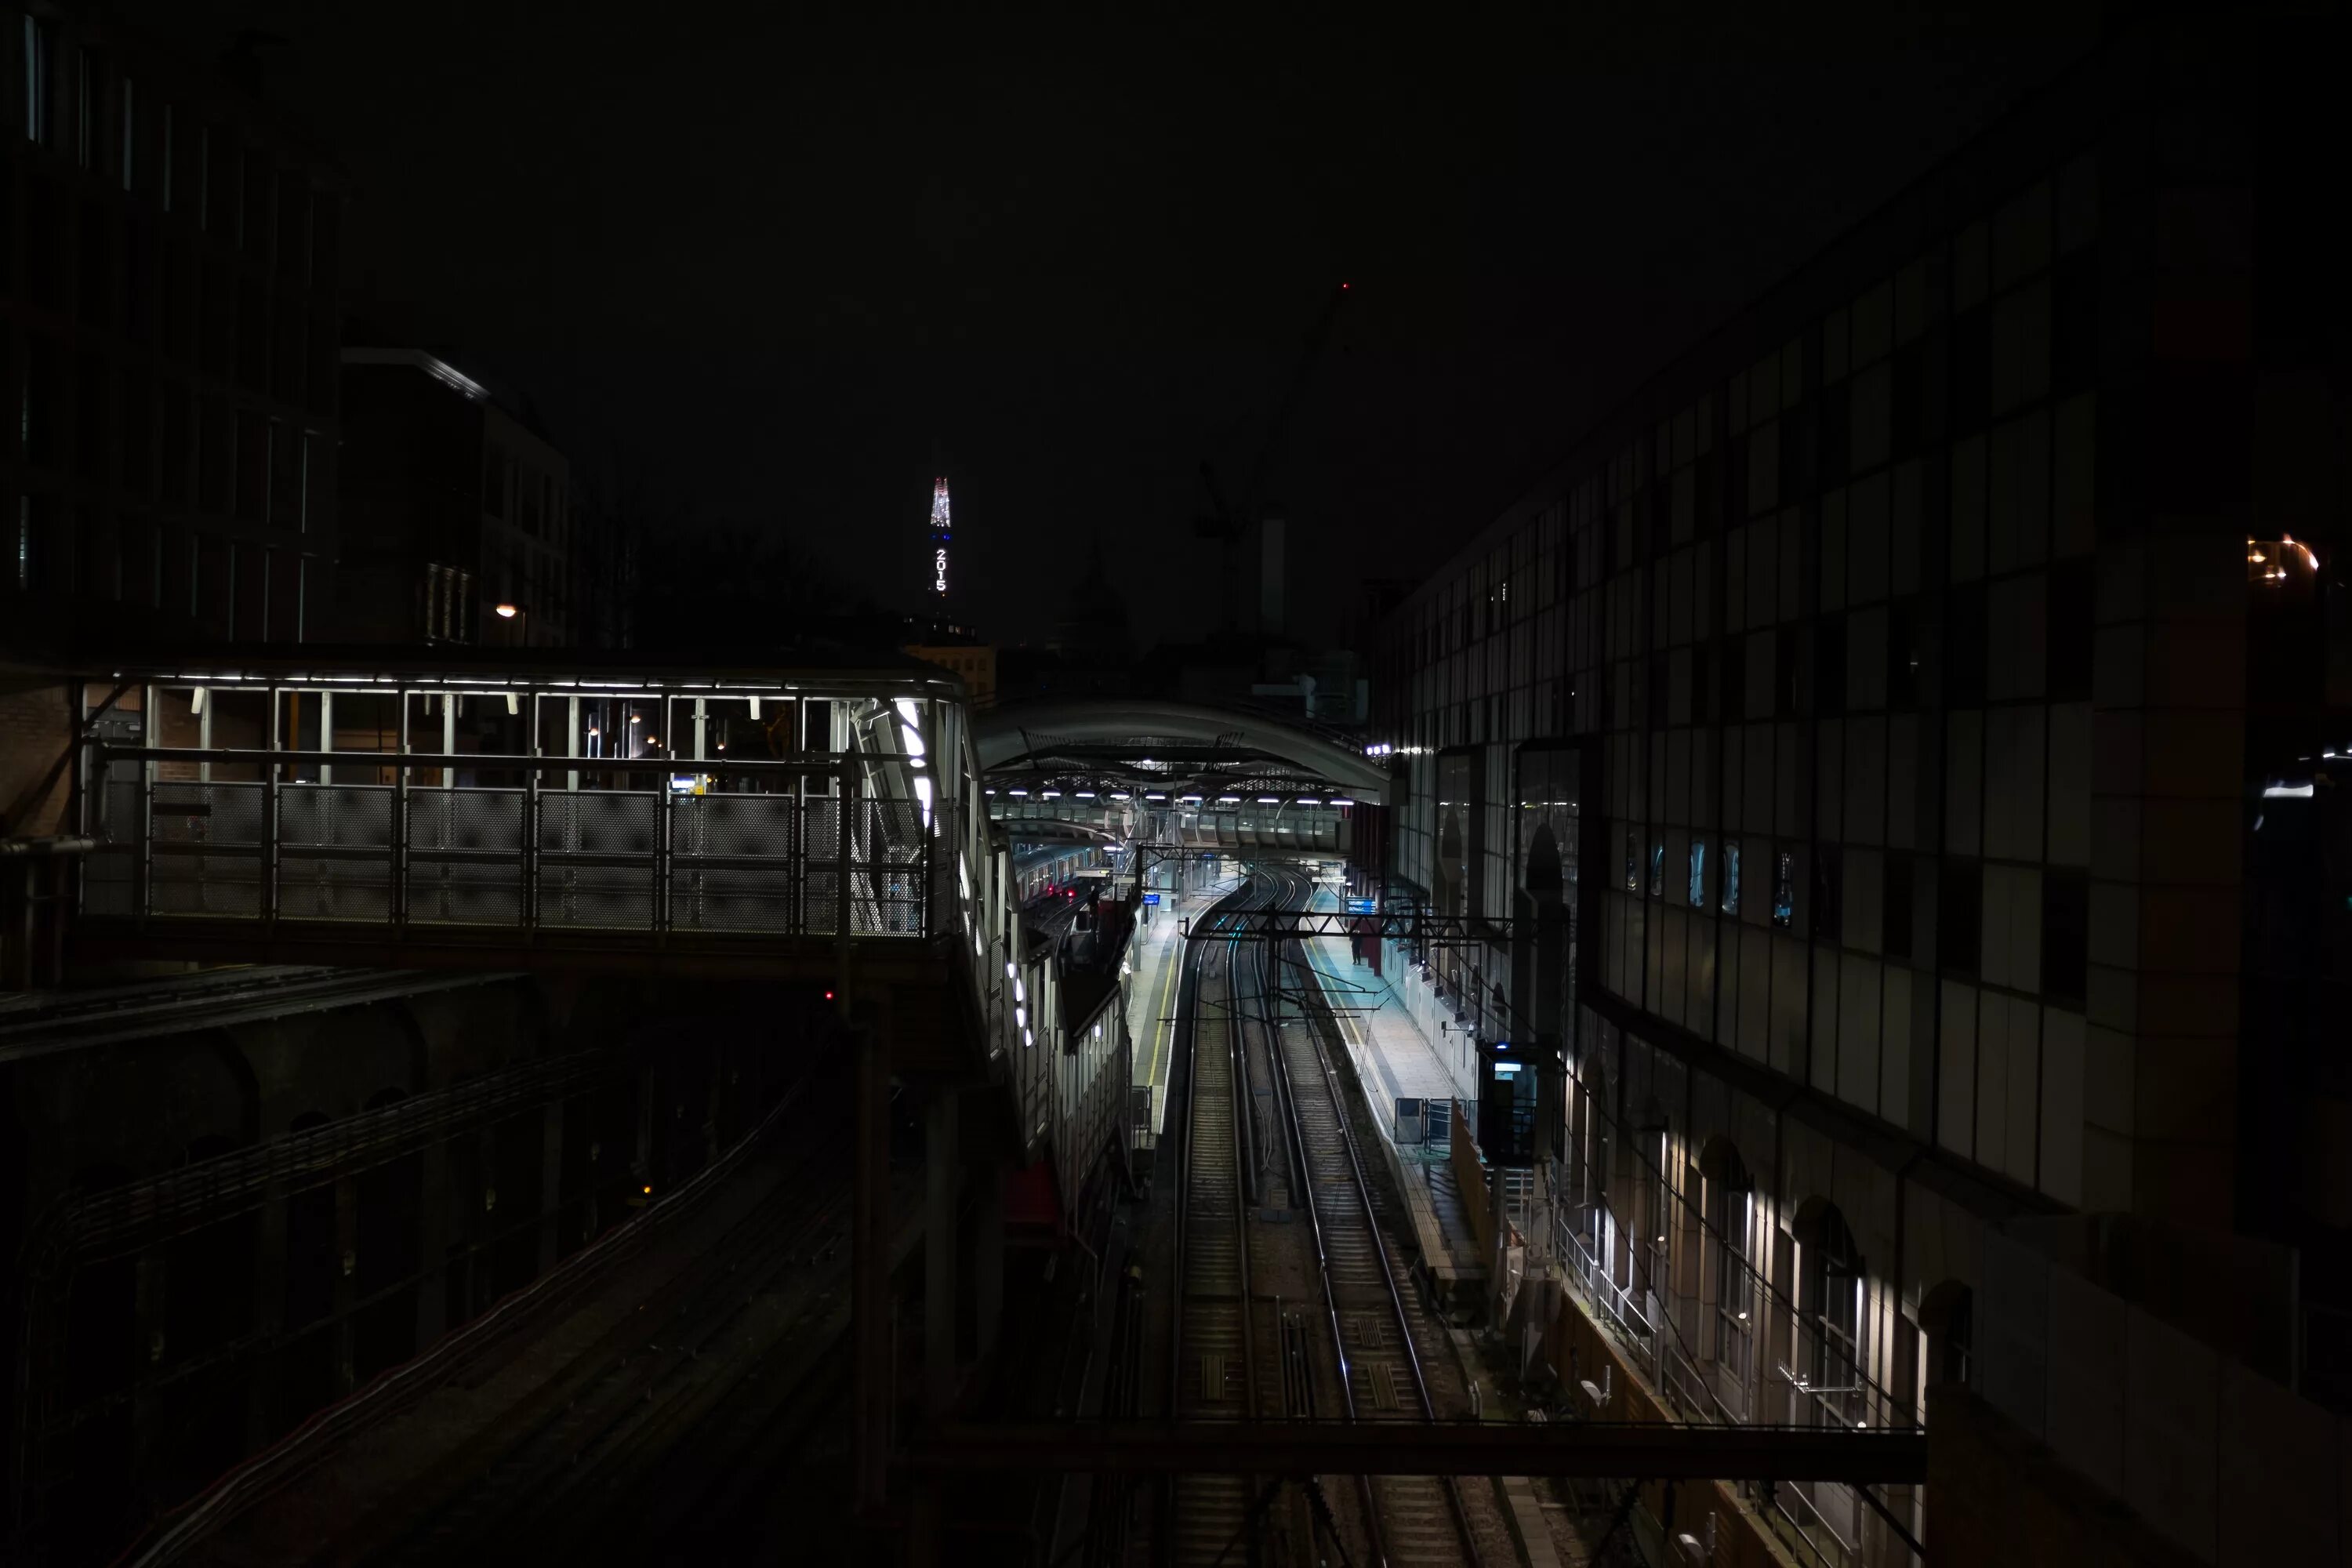 ЖД пути ночью. Ночной вокзал. Железная дорога ночью. РЖД ночью. Включи станцию на ночь